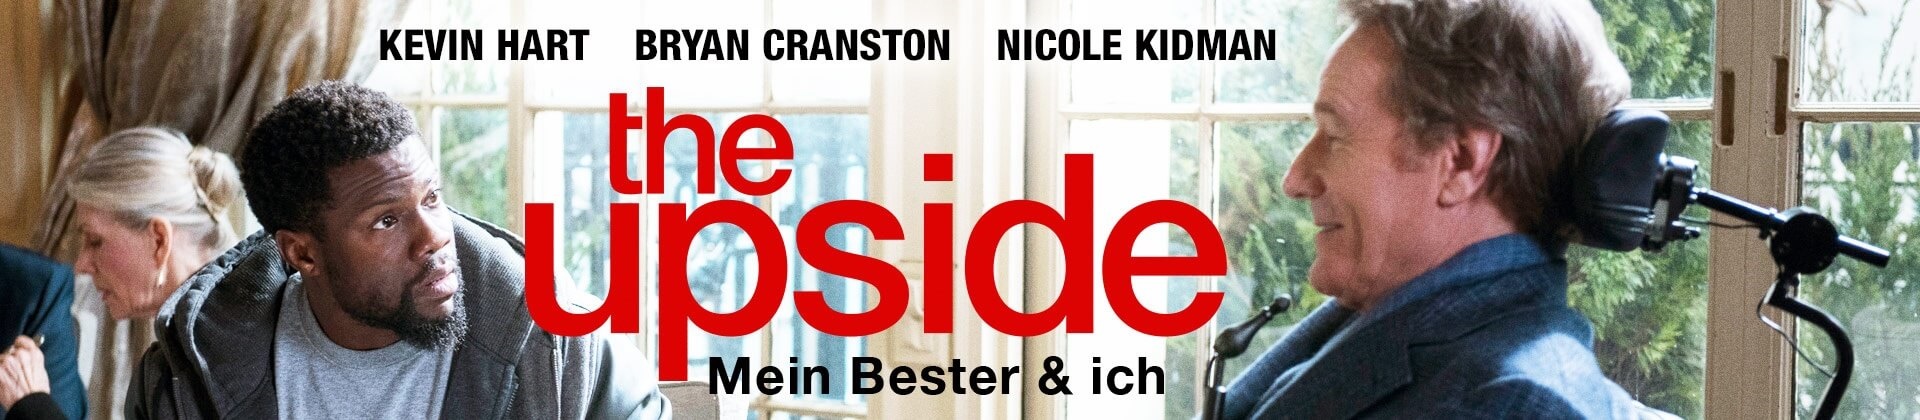 The Upside - Mein Bester & ich